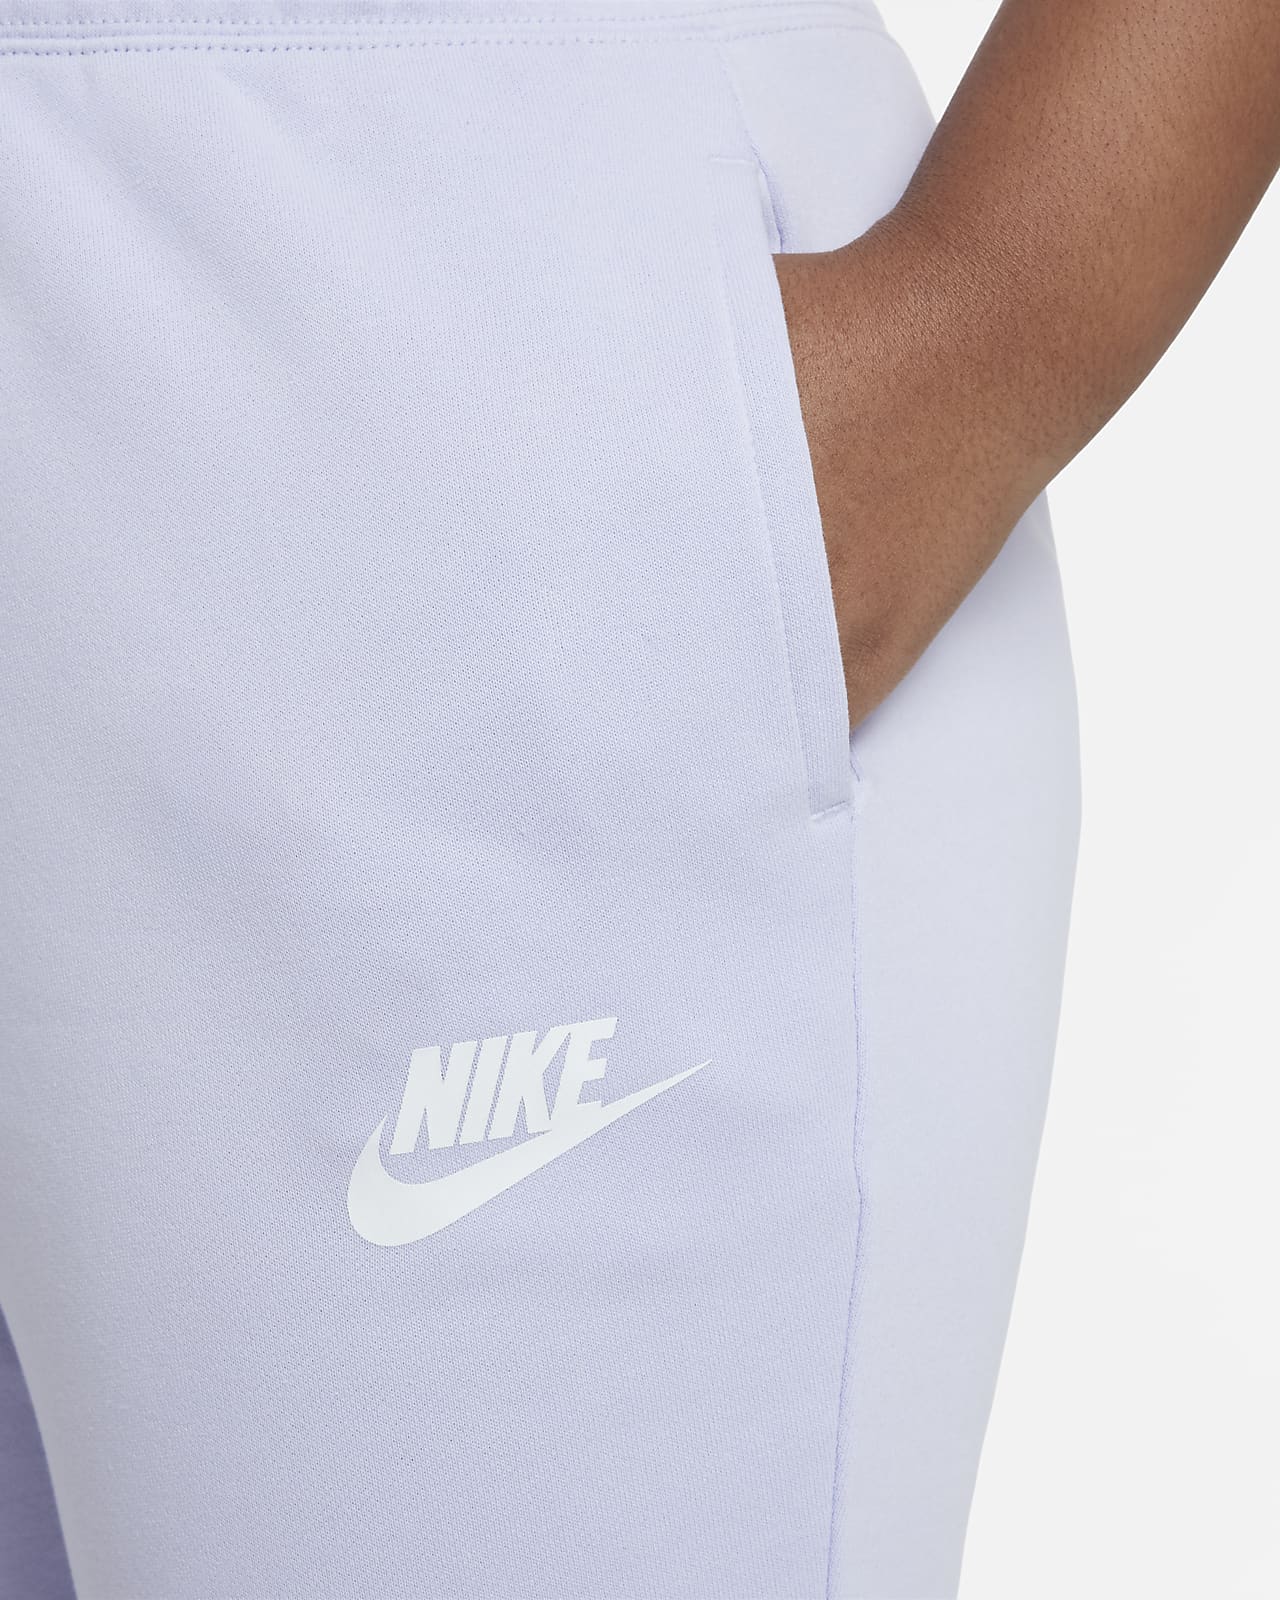 Faconsyede Sportswear i french terry til større børn (piger) (udvidet størrelse). Nike DK